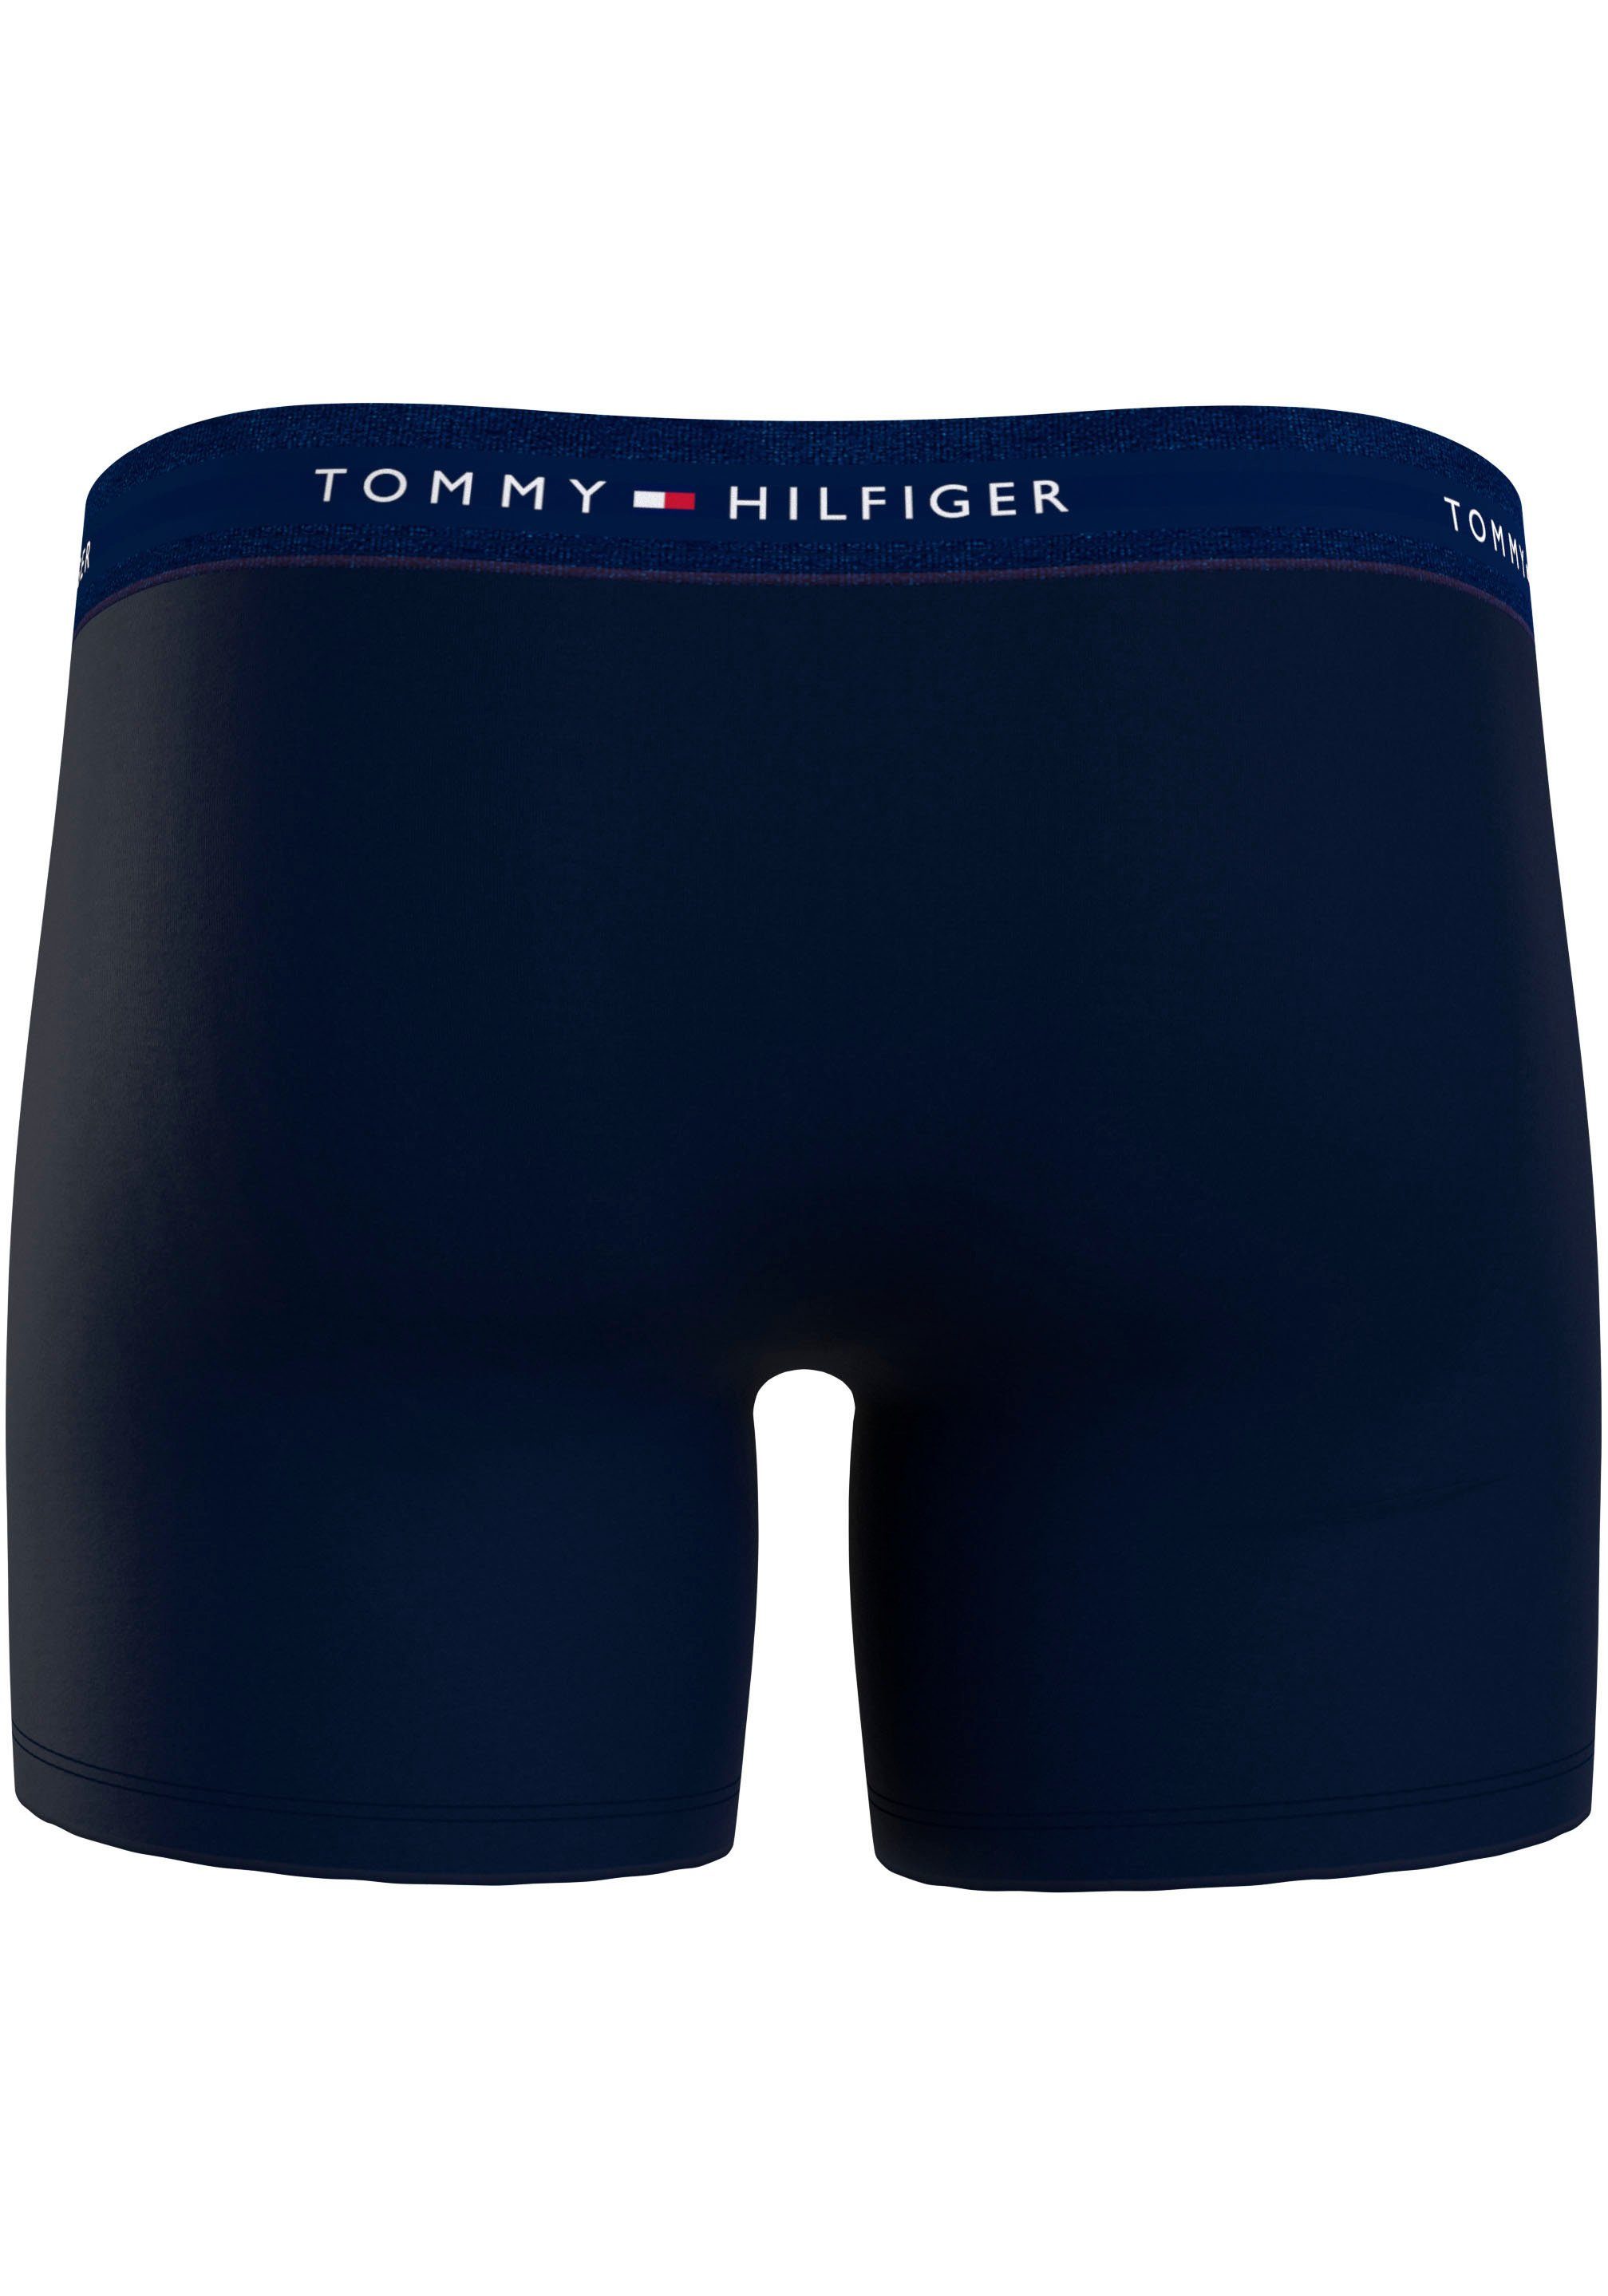 Tommy Hilfiger Underwear Boxer längerem WB BRIEF Bein (Packung, BOXER 3P mit 3er-Pack)